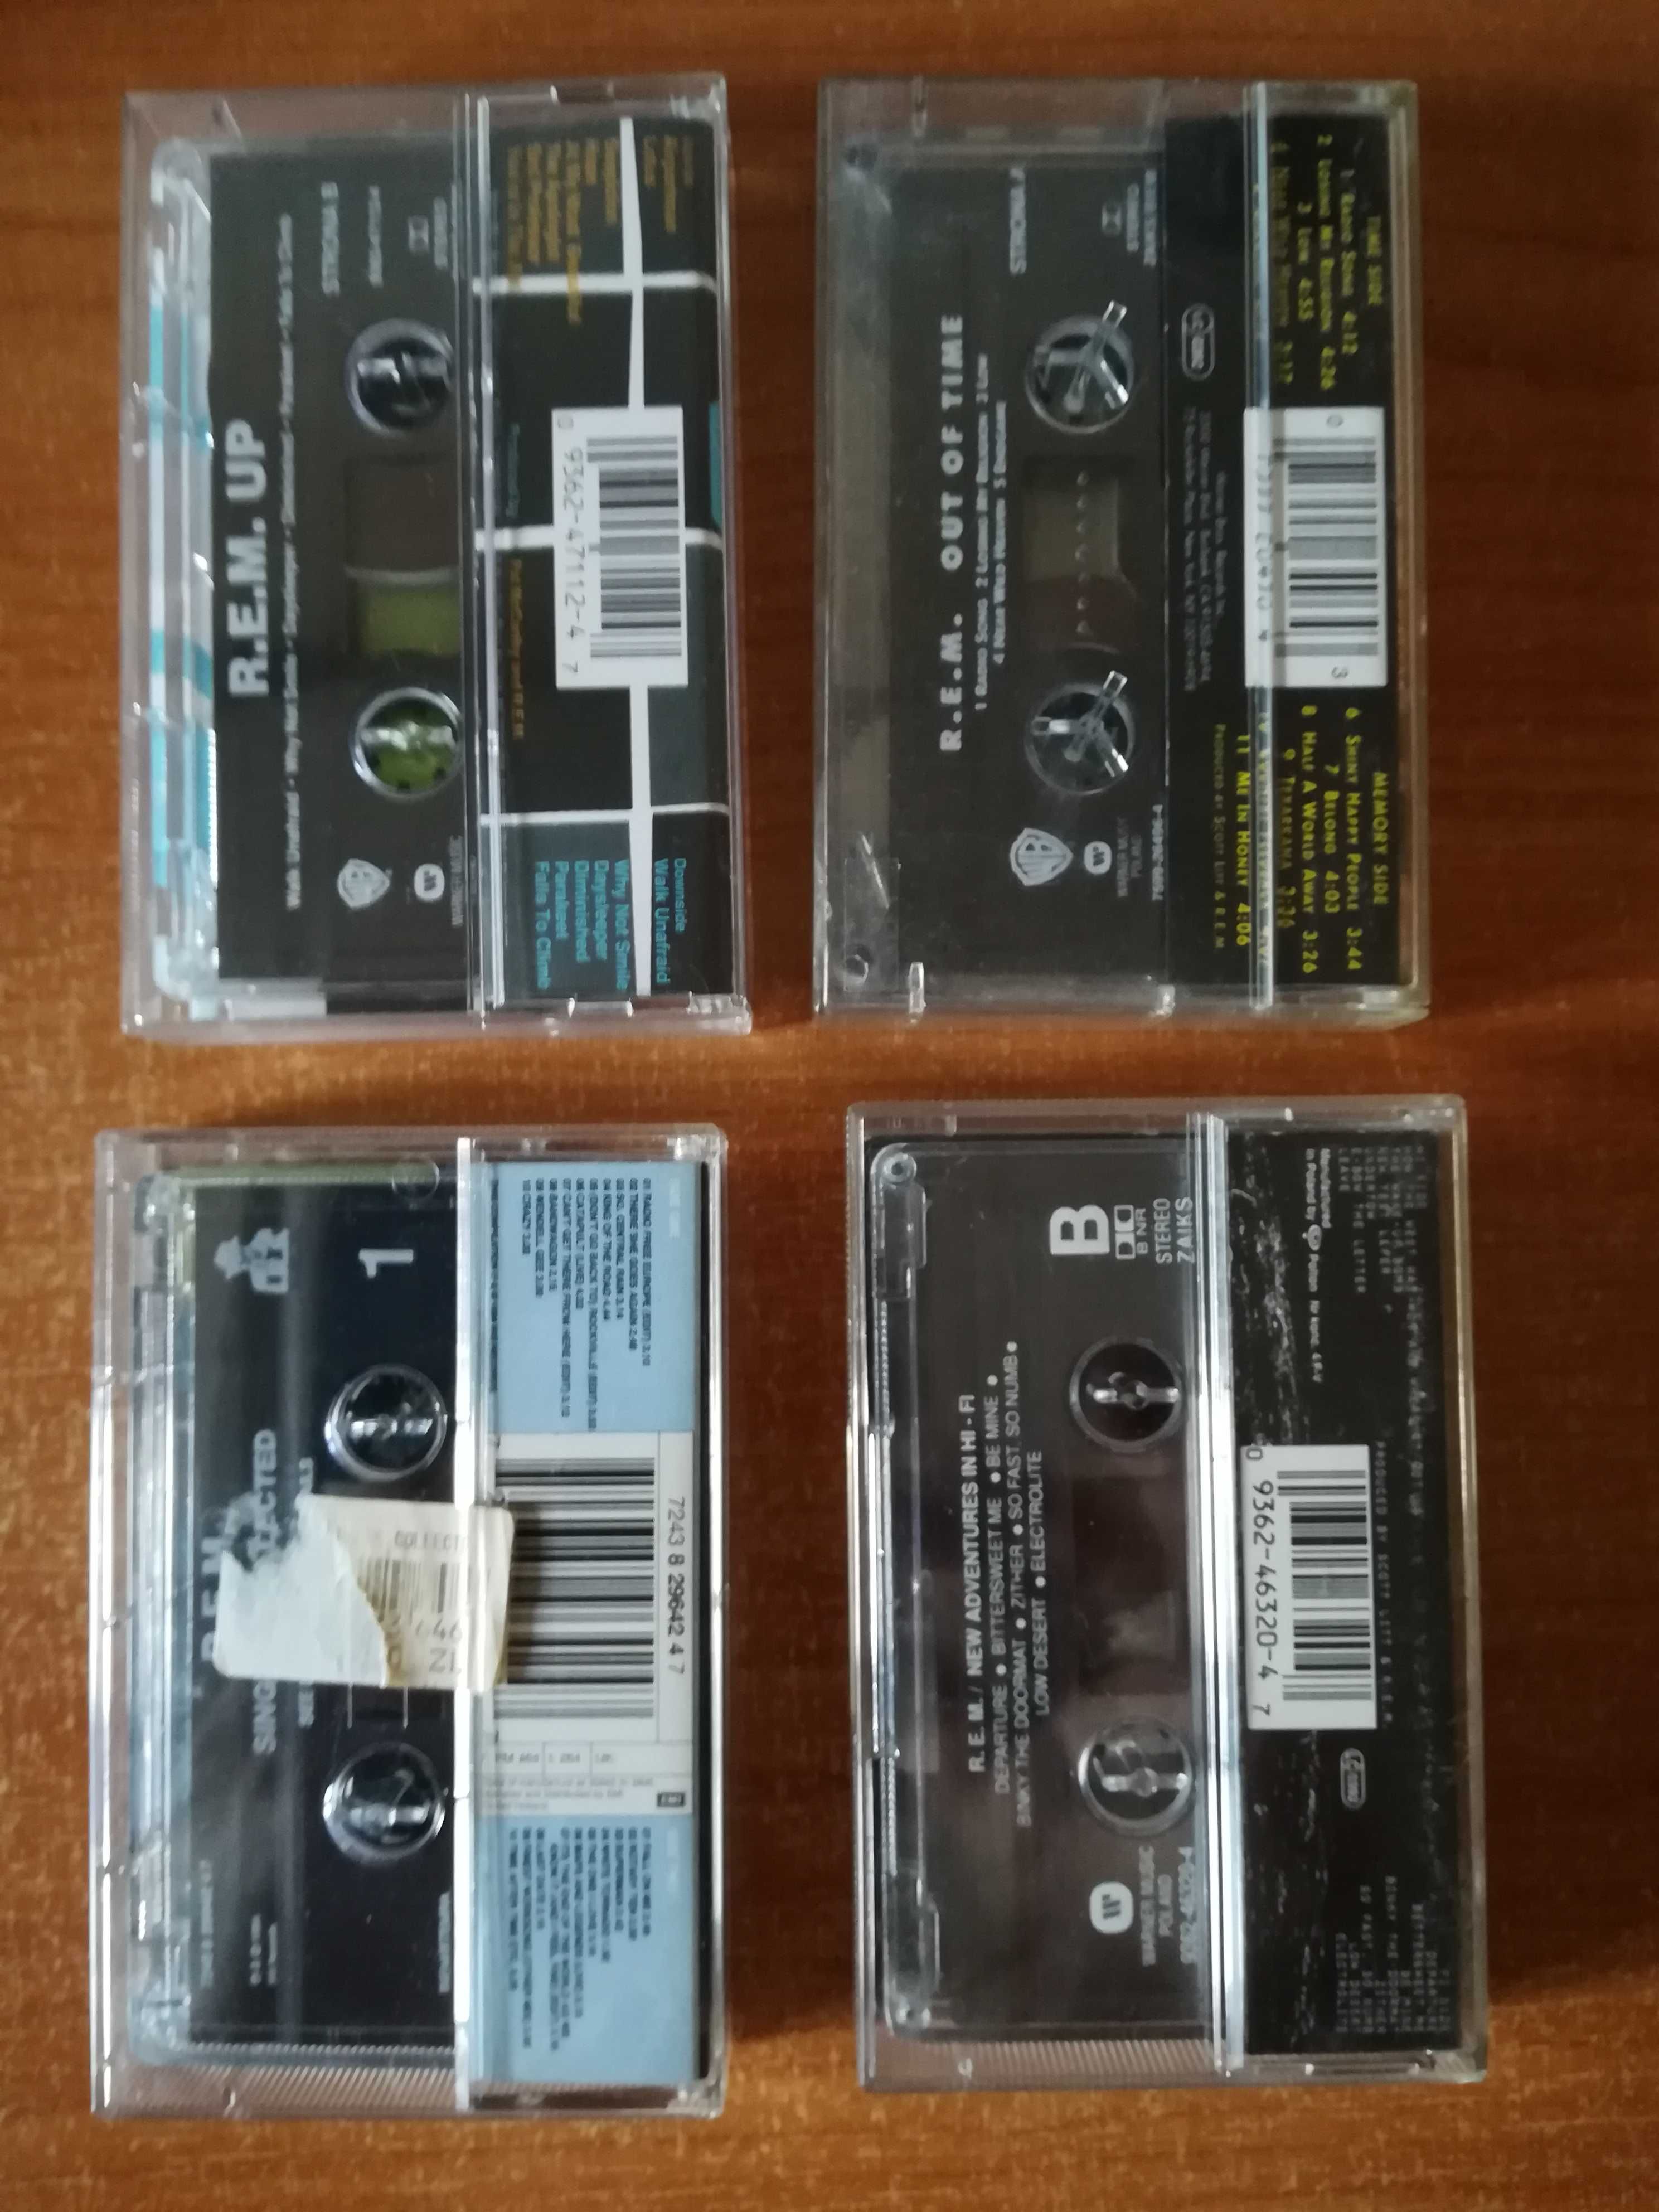 kasety magnetofonowe R.E.M. zestaw